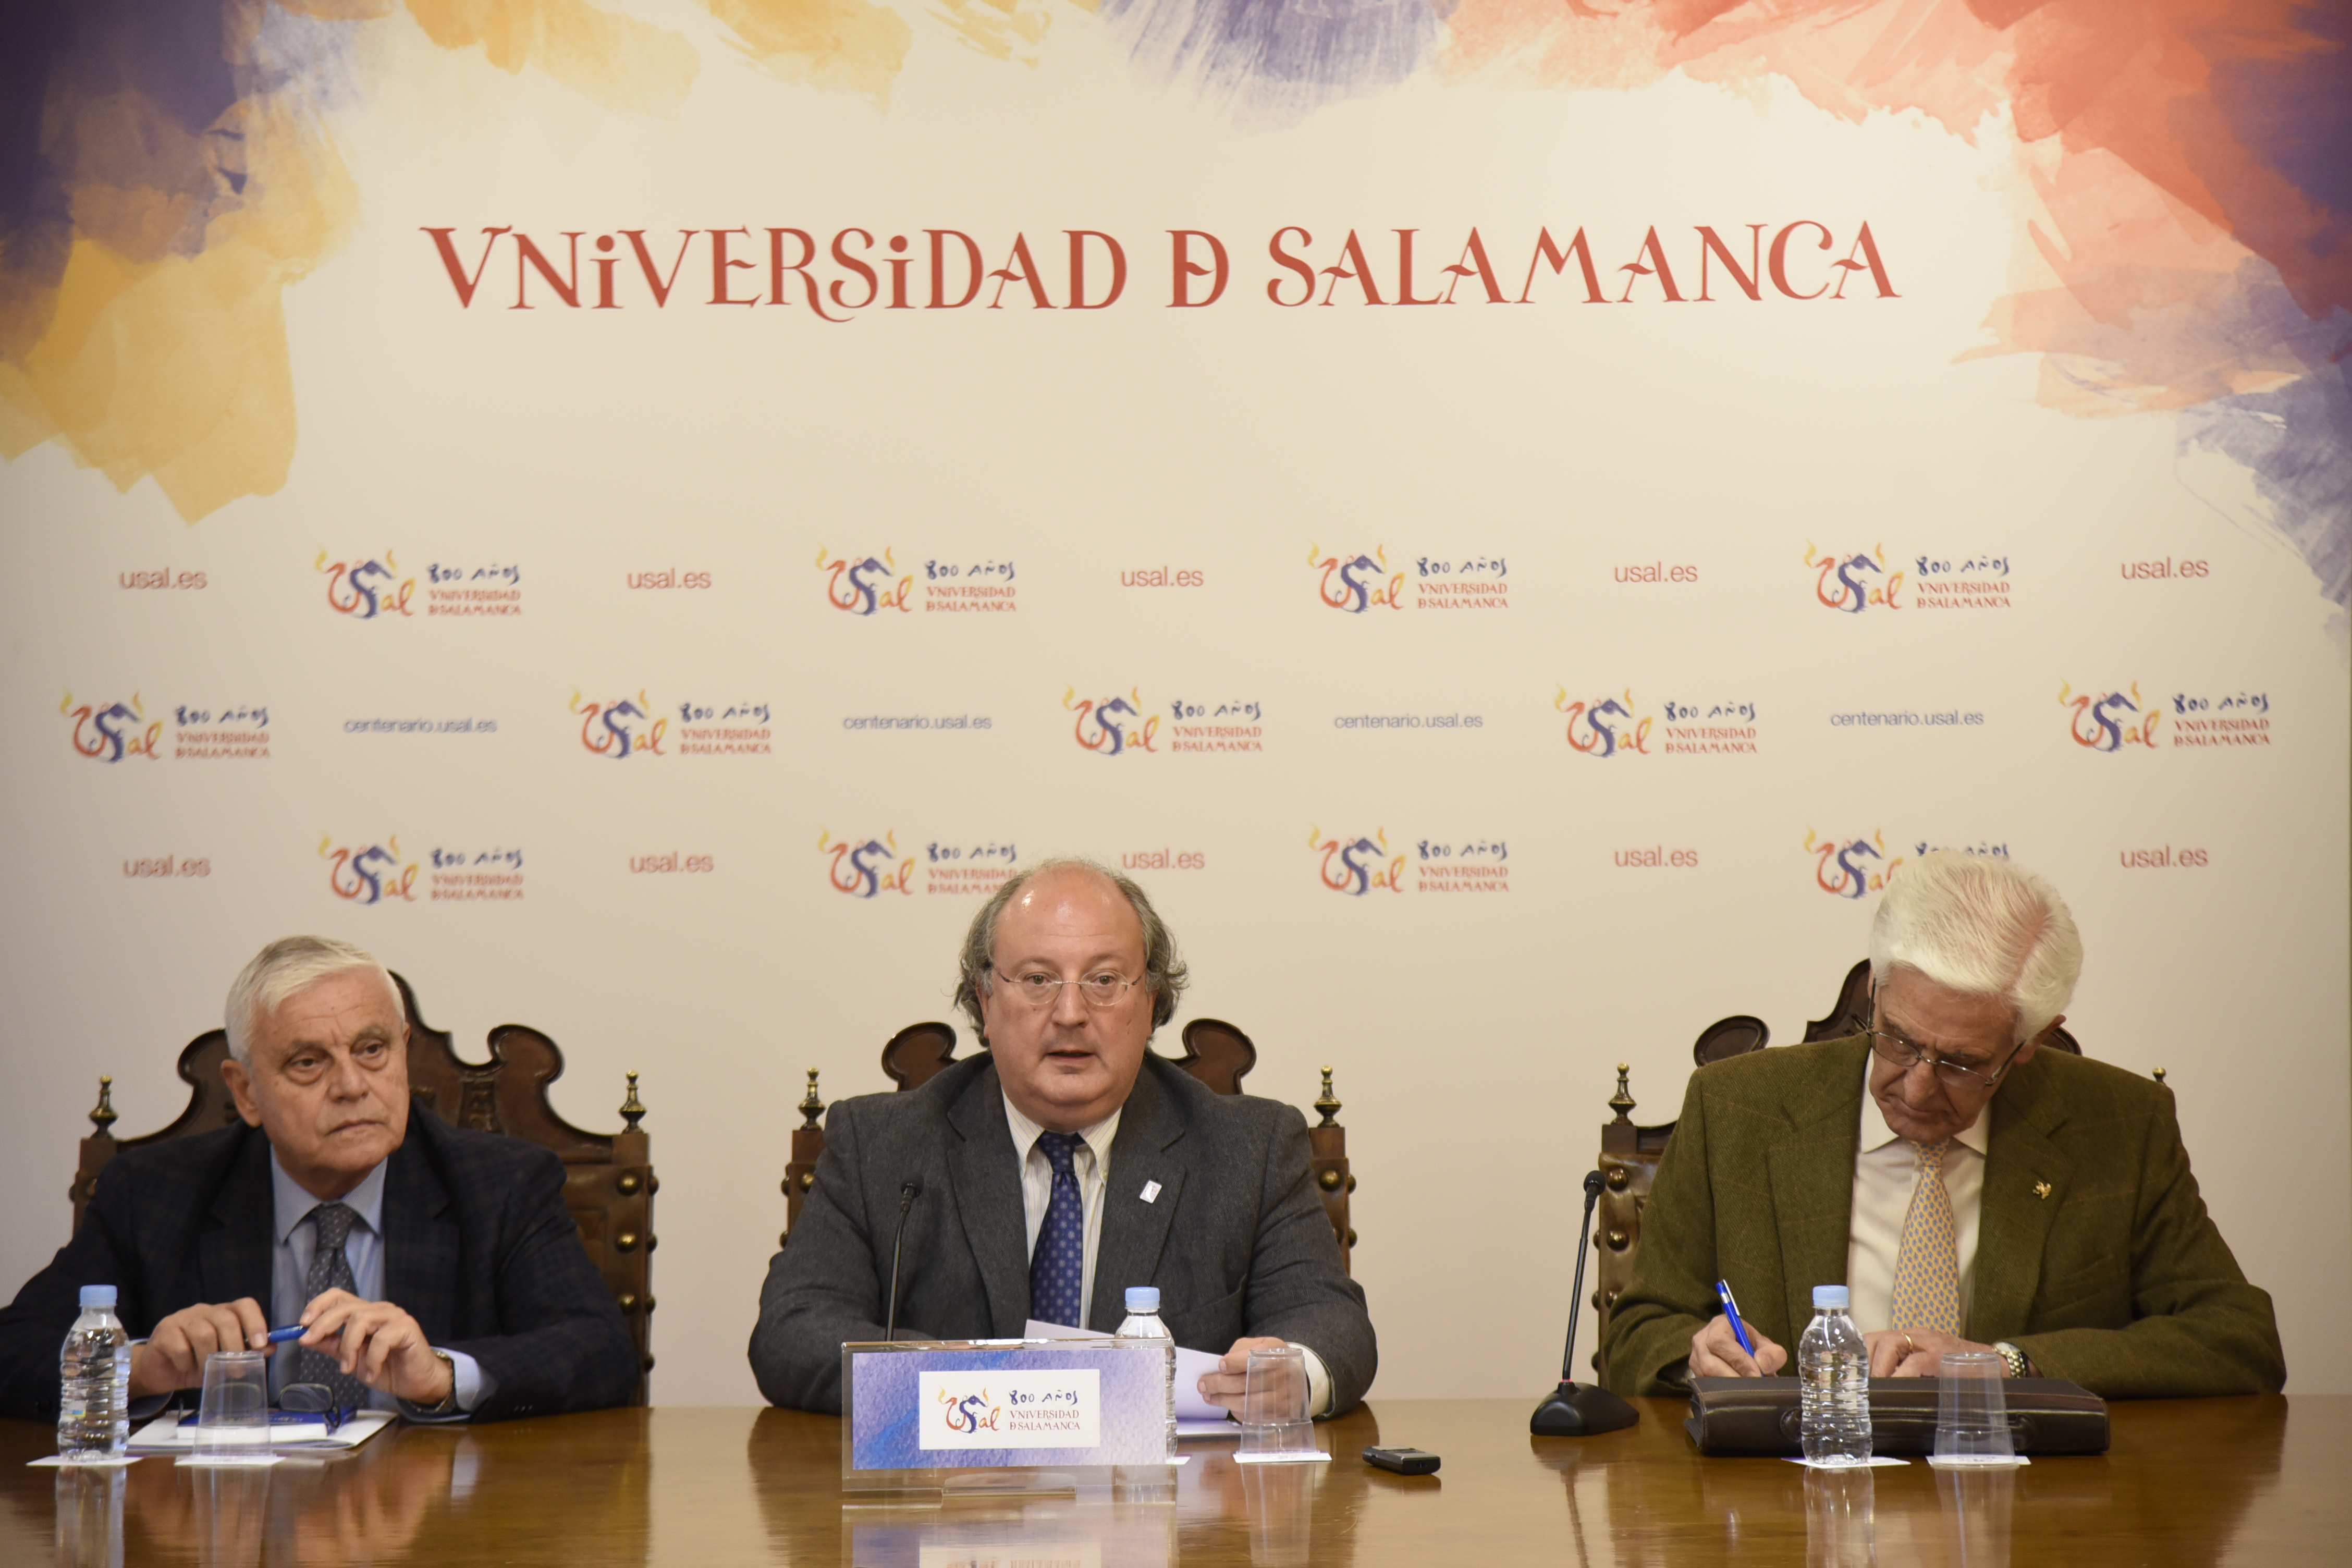 La Asociación Grupo de Opinión Salvador de Madariaga se suma al VIII Centenario de la Universidad ahondando en el legado de la Escuela de Salamanca 